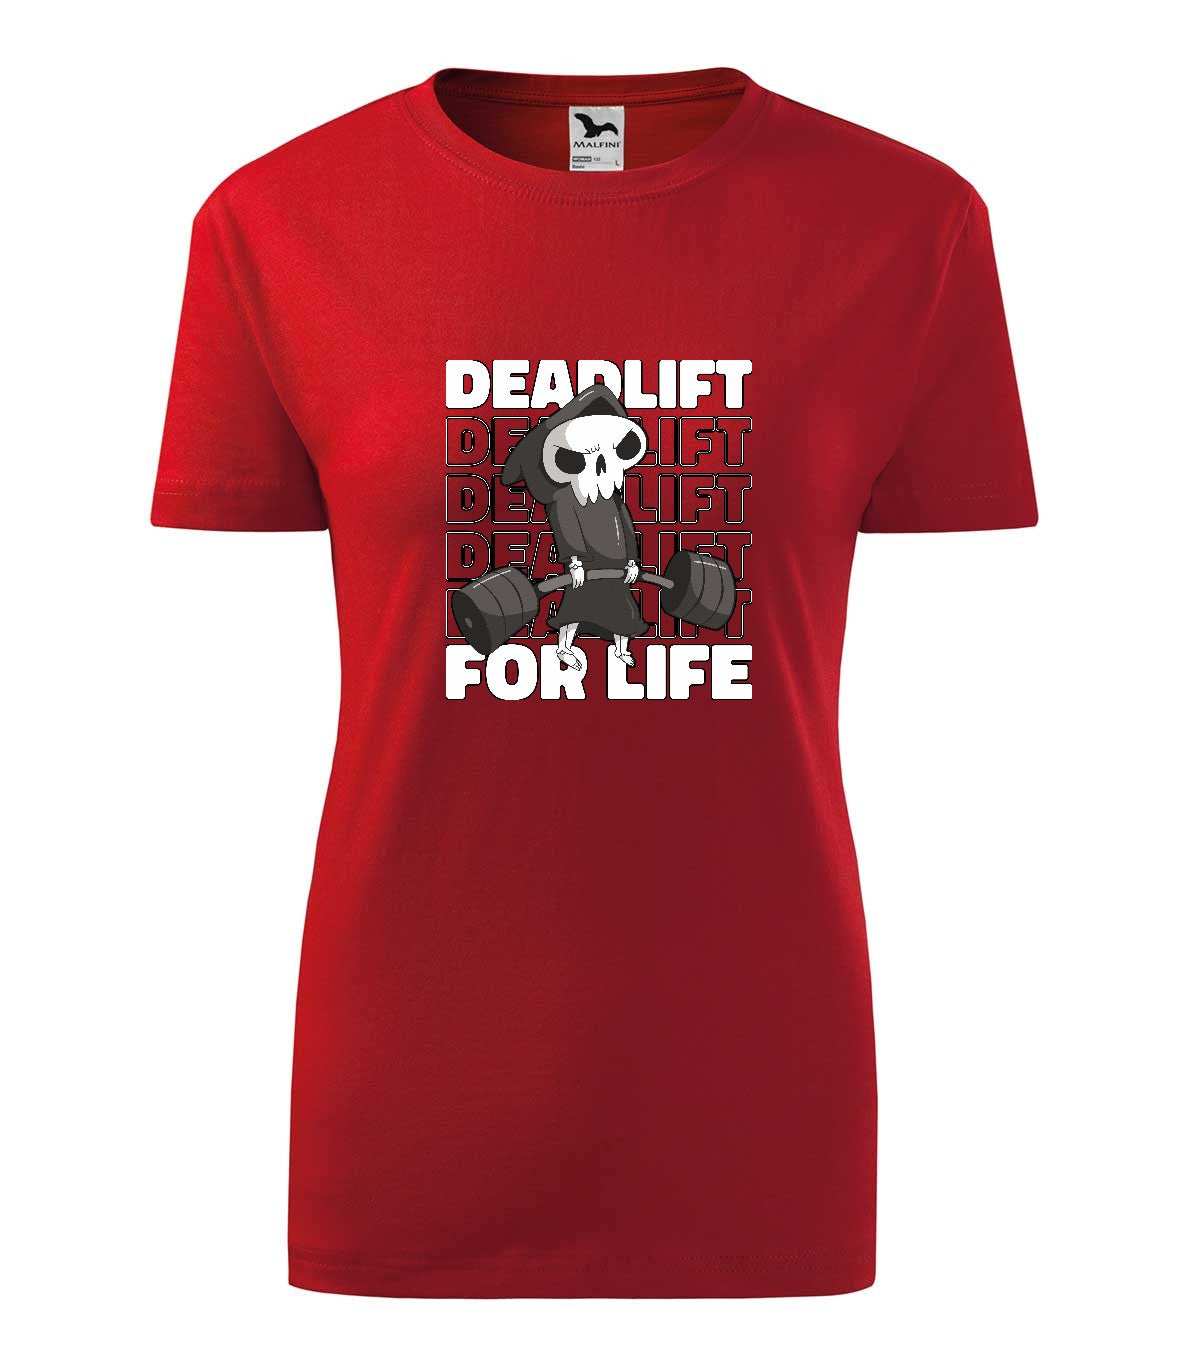 Deadlift női technikai póló